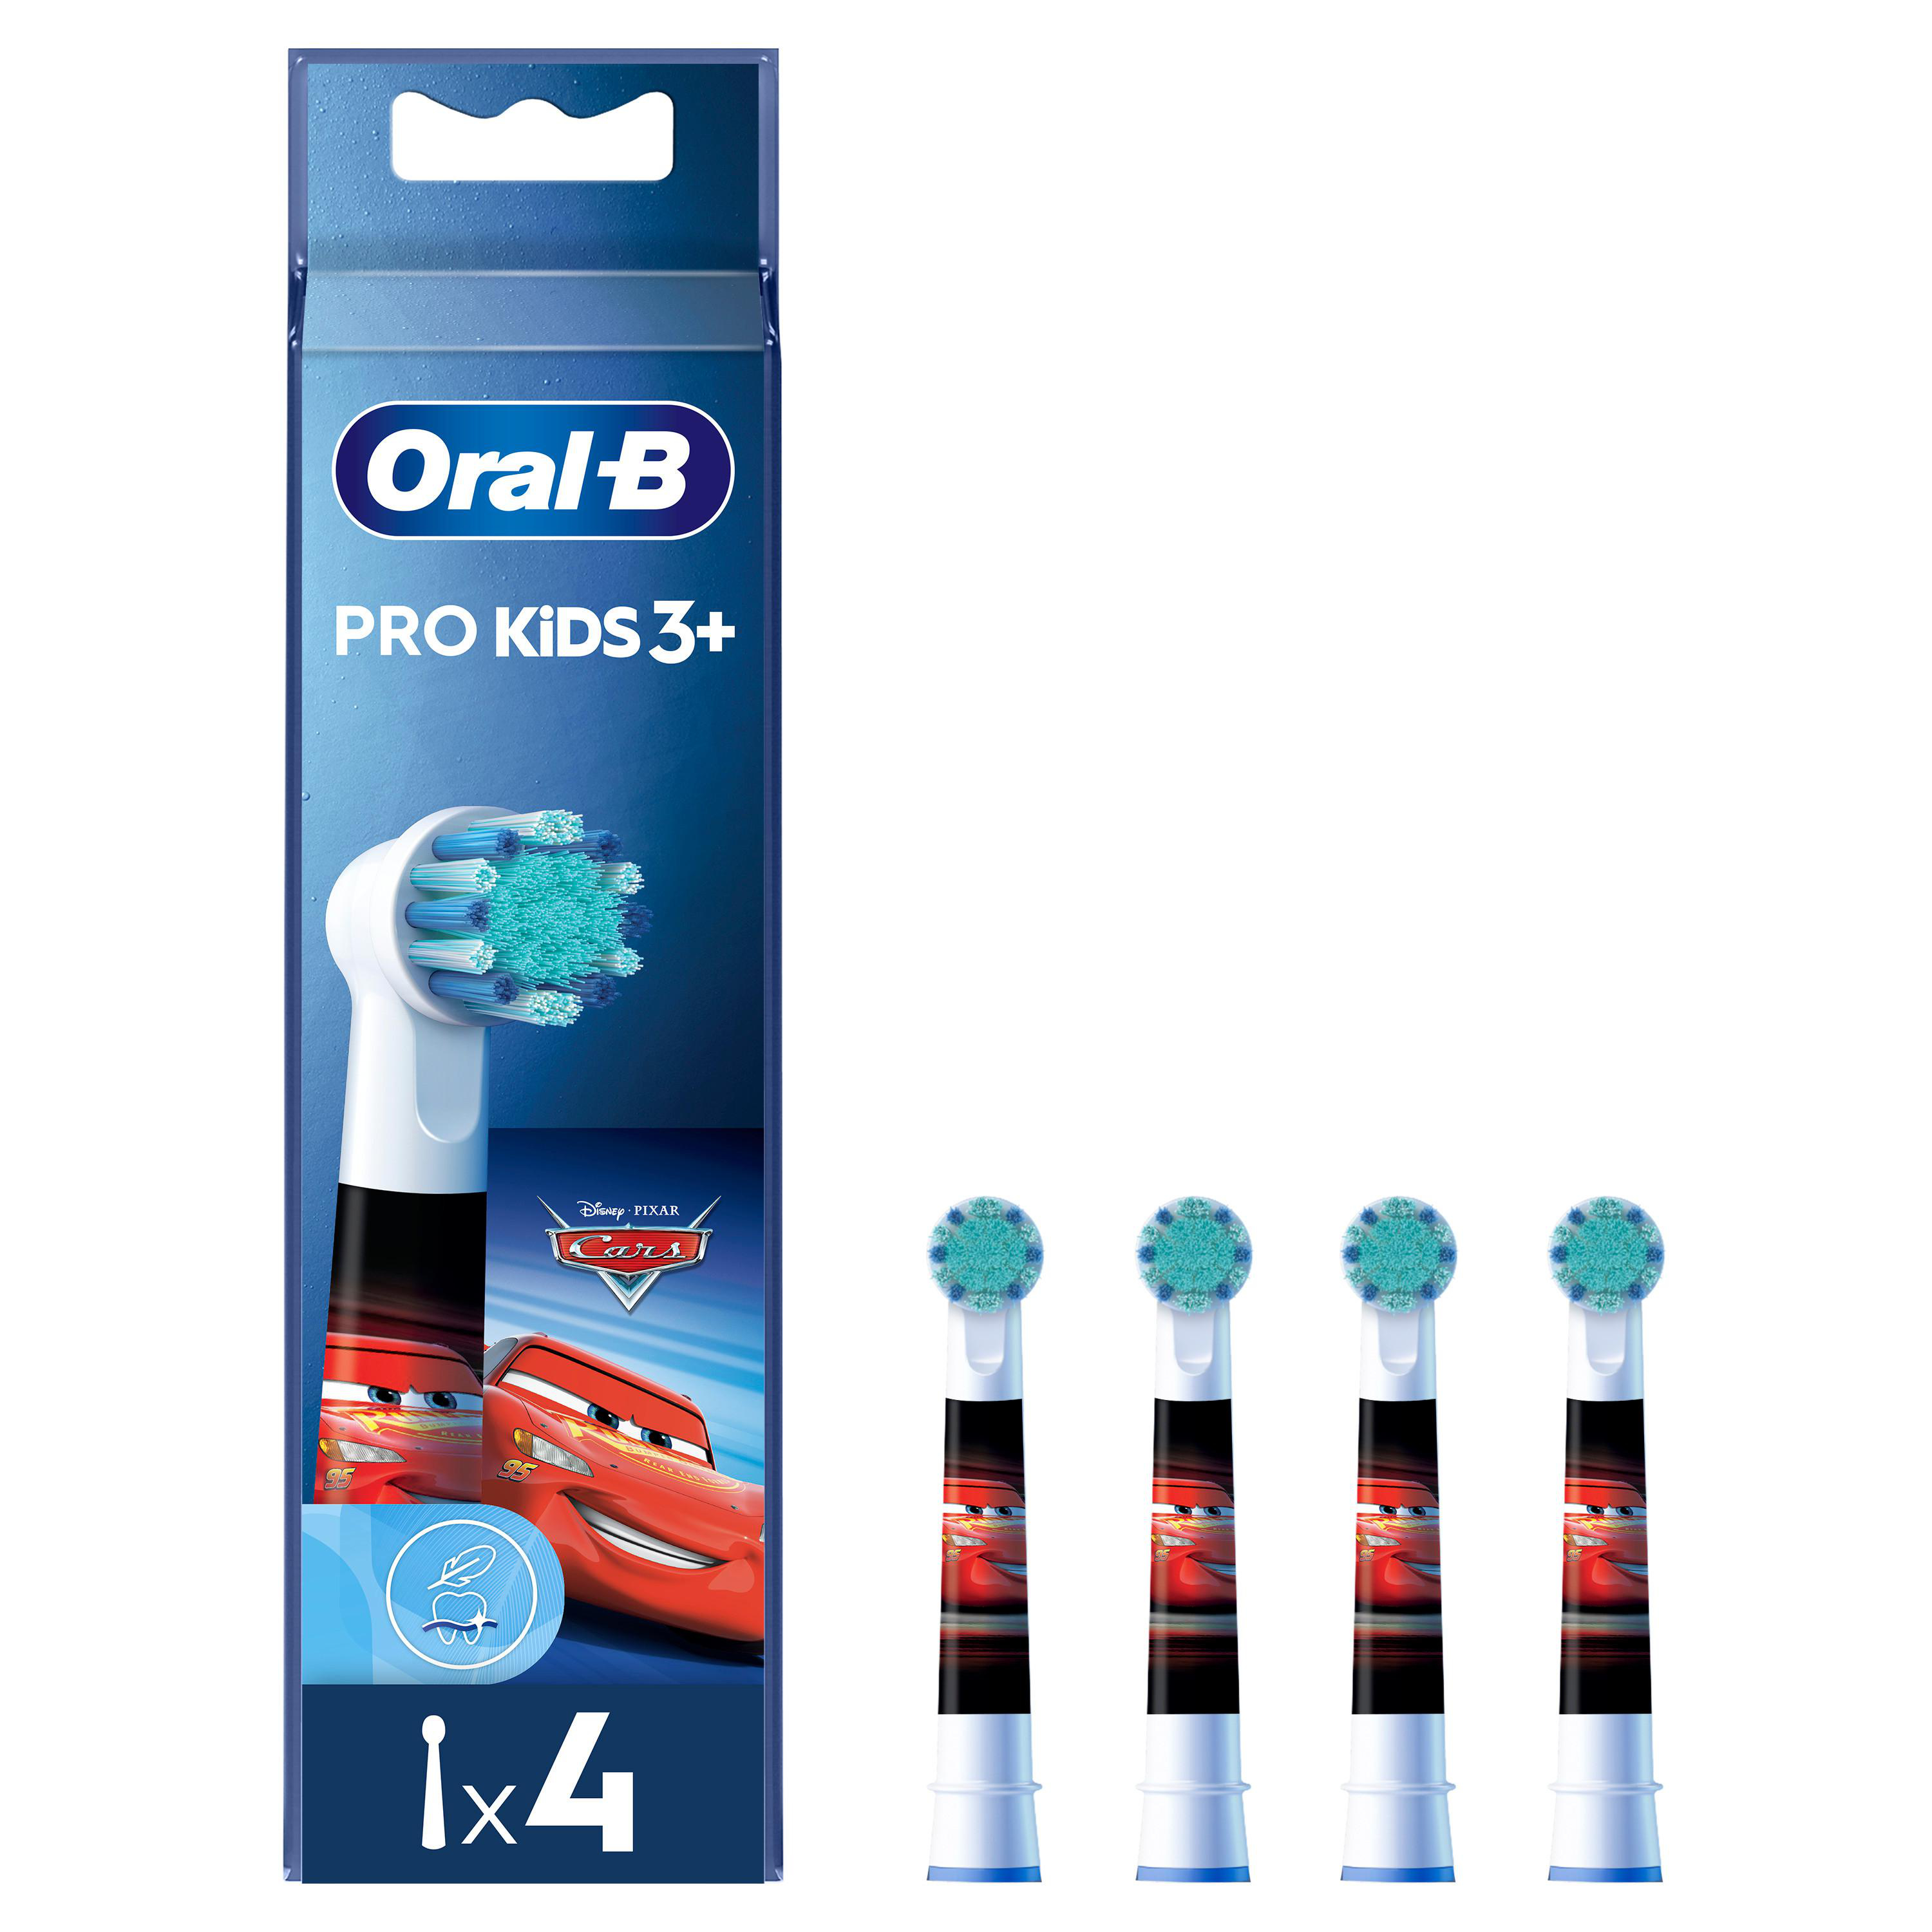 ORAL-B Pro Kids 3+ mit 4 Motiv, oder Princess Cars Aufsteckbürsten Stück